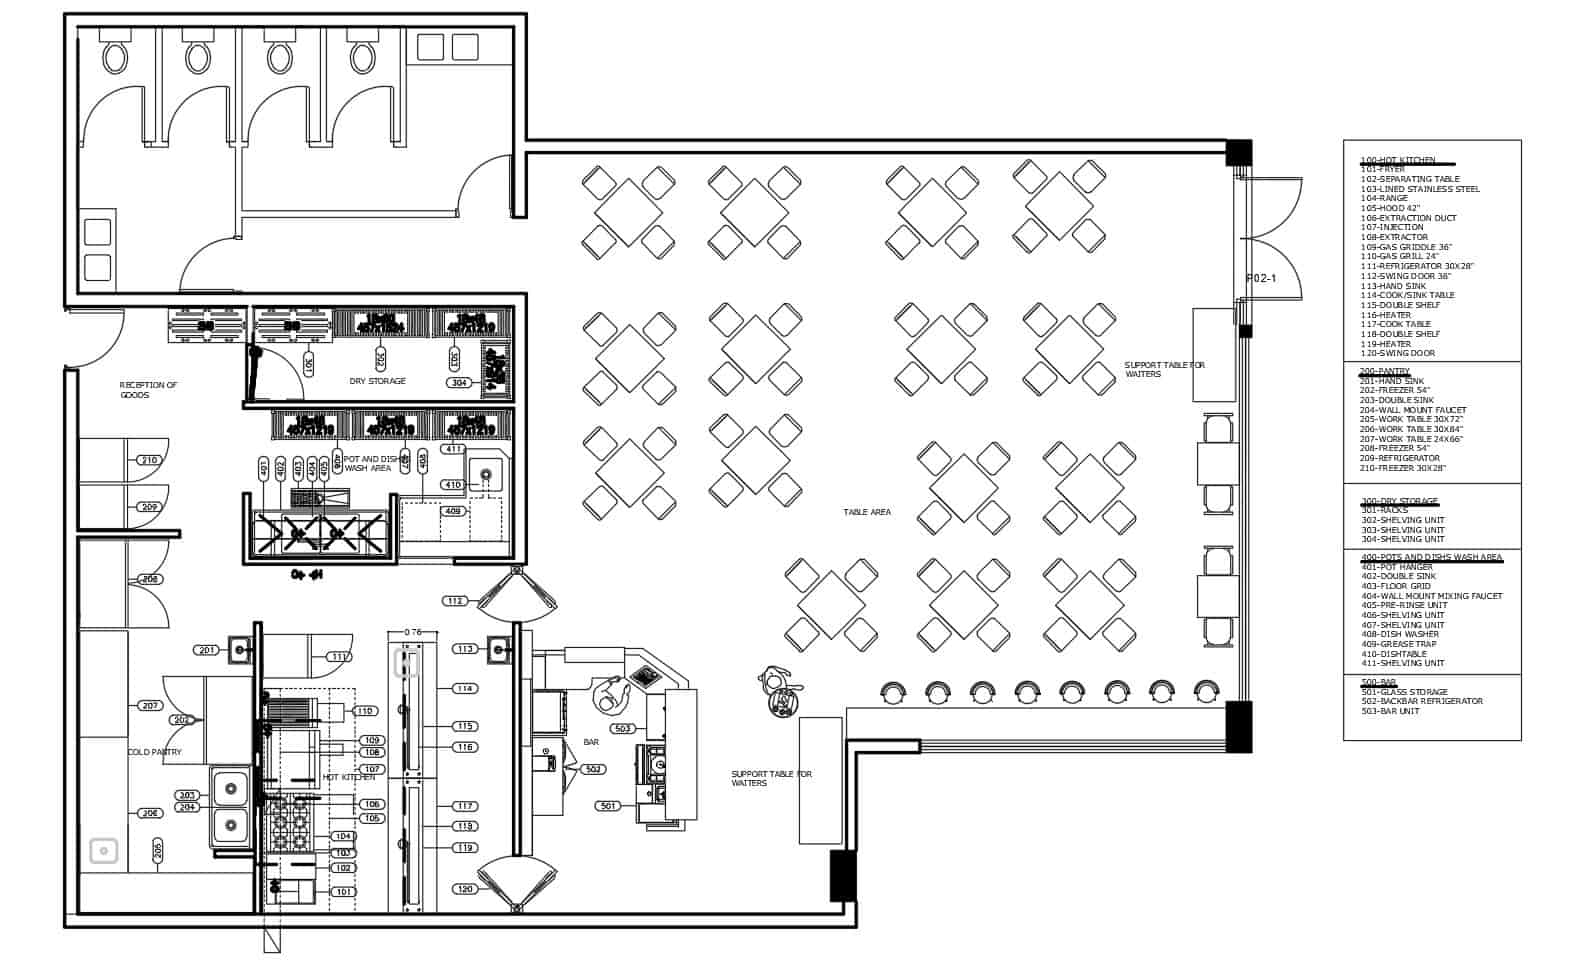 Complete Restaurant kitchen layout floorplan